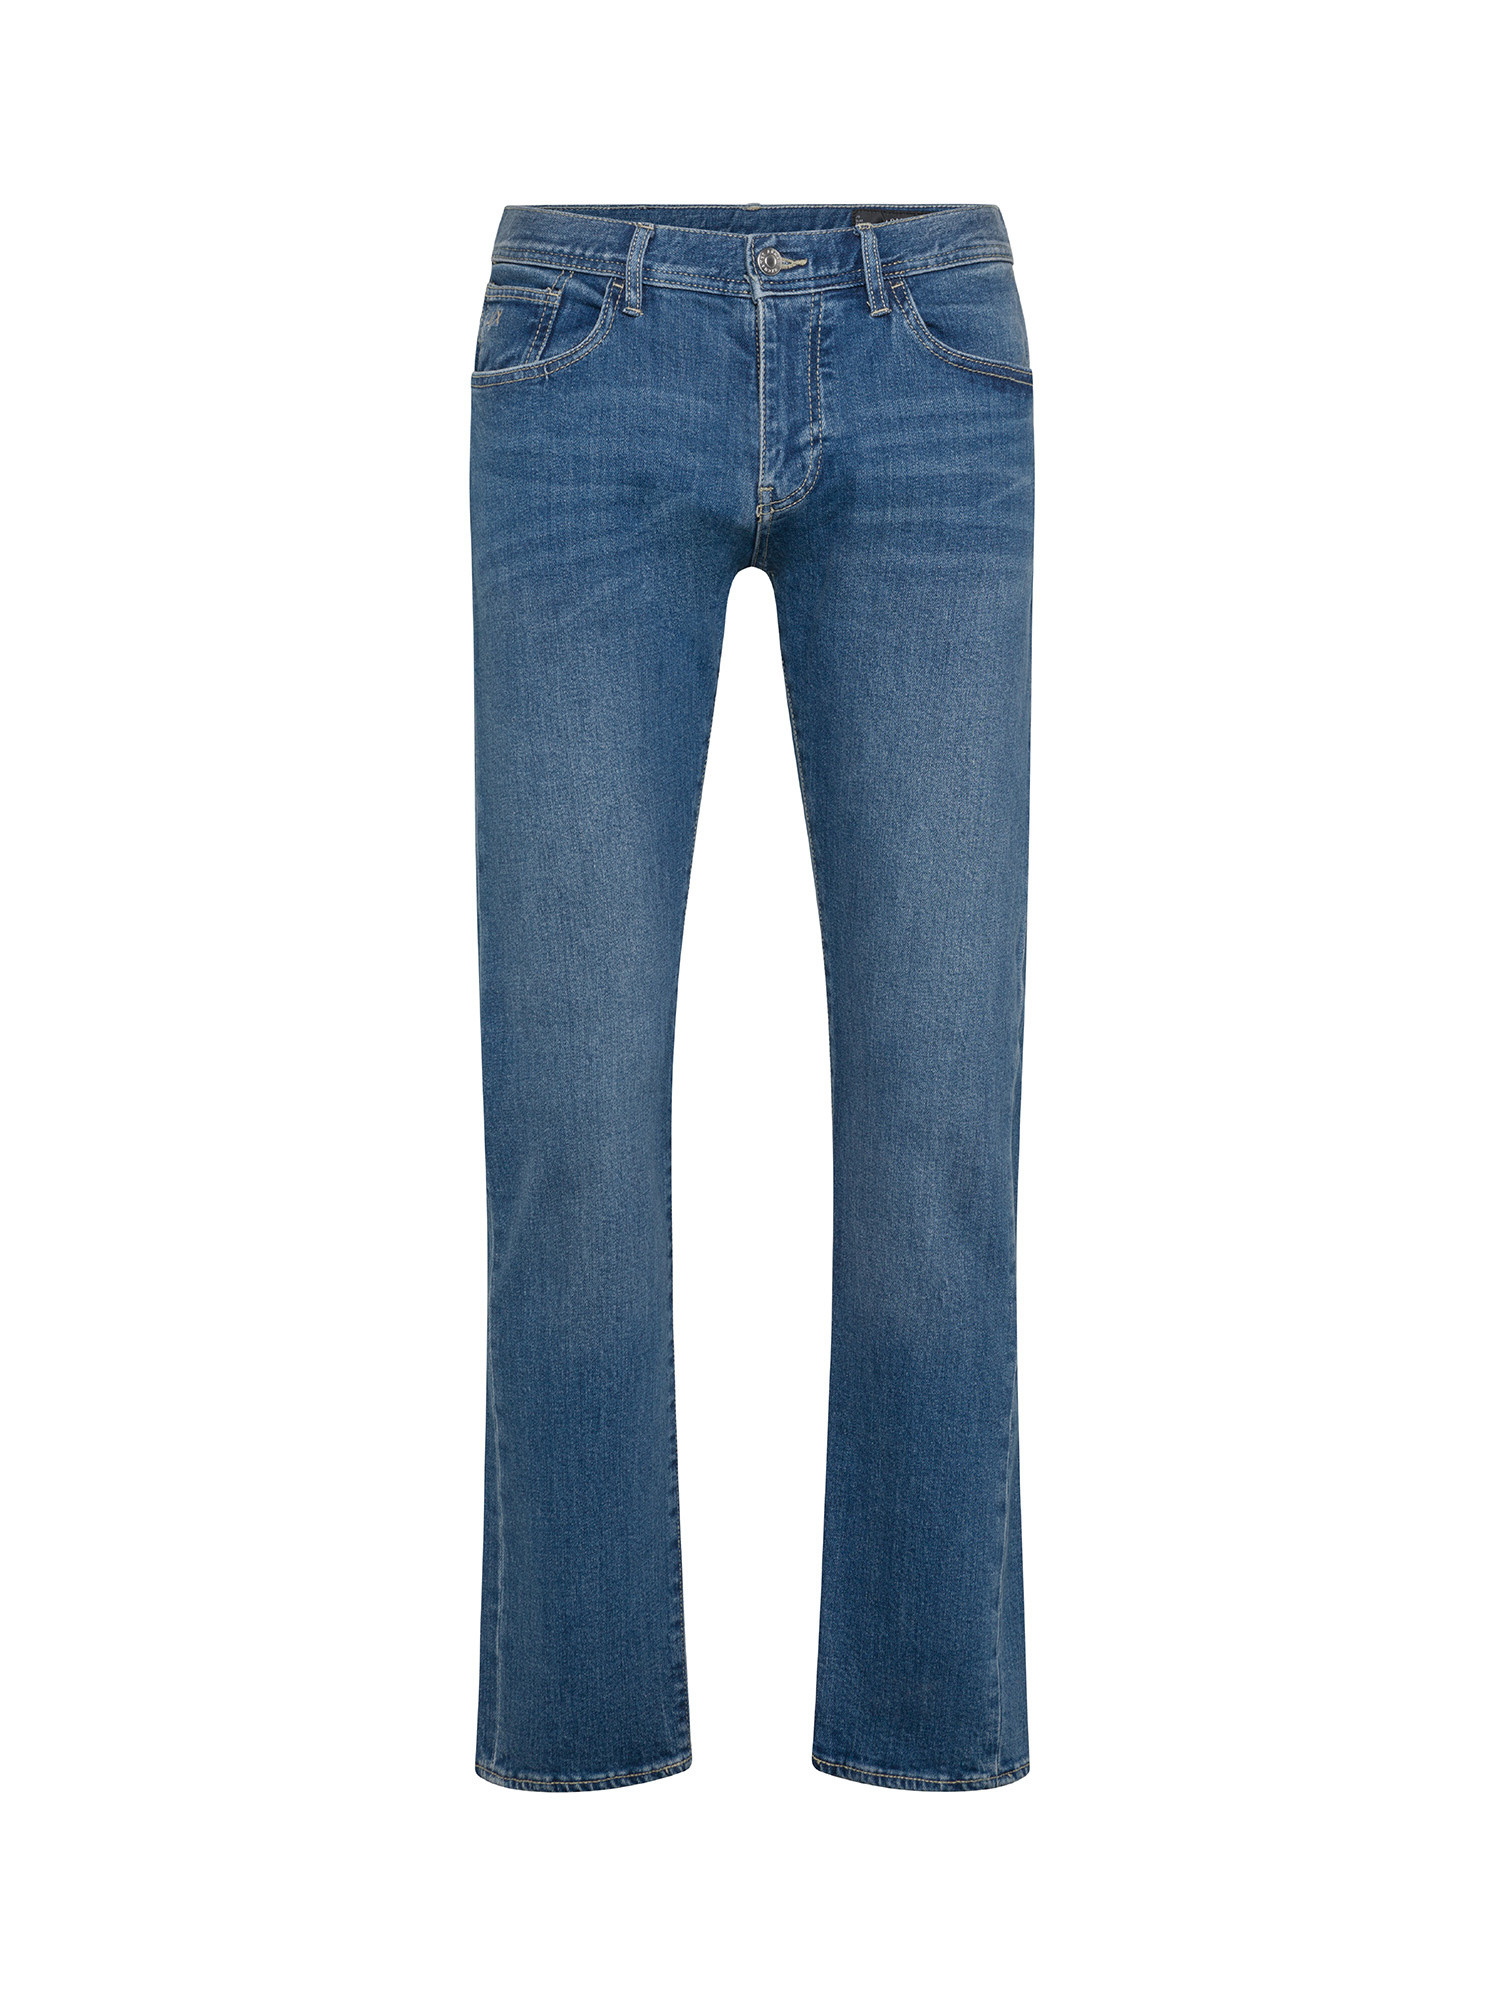 Armani Exchange - Slim fit five pocket jeans, Denim, large image number 0